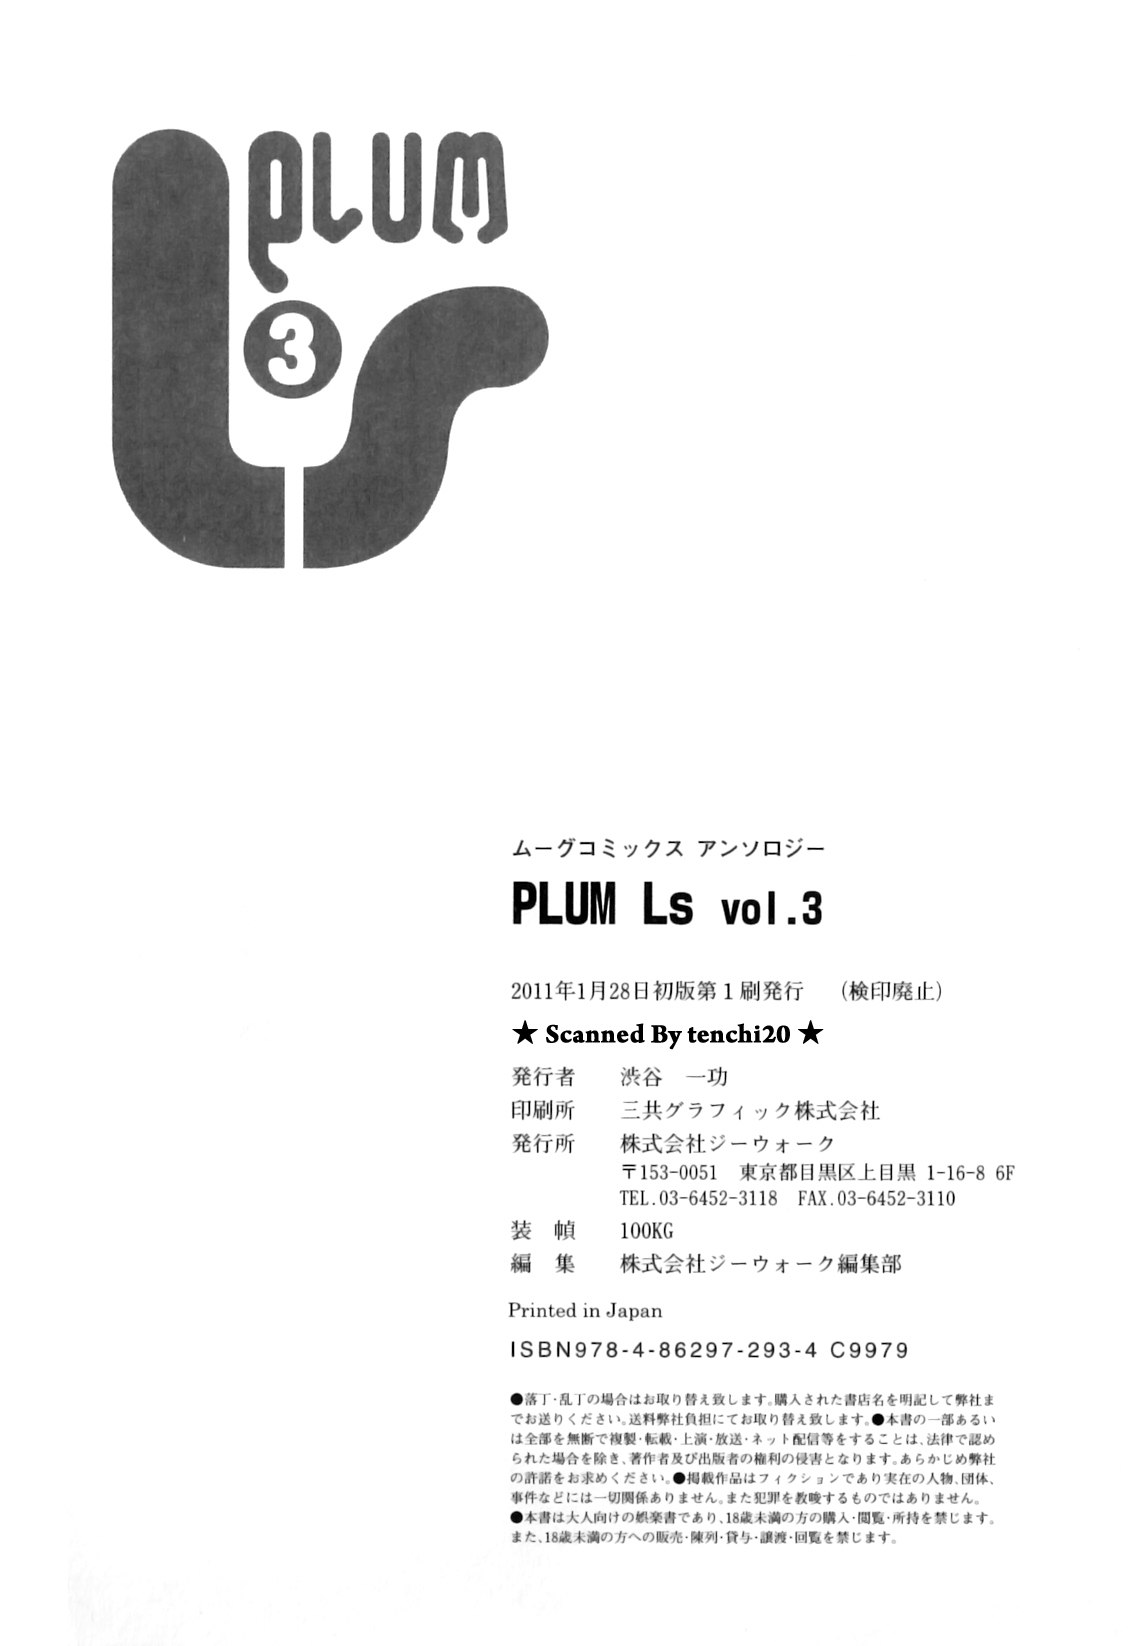 アンソロジー - PLUM LS 03 [2011-01-28] (Book) (HQ)